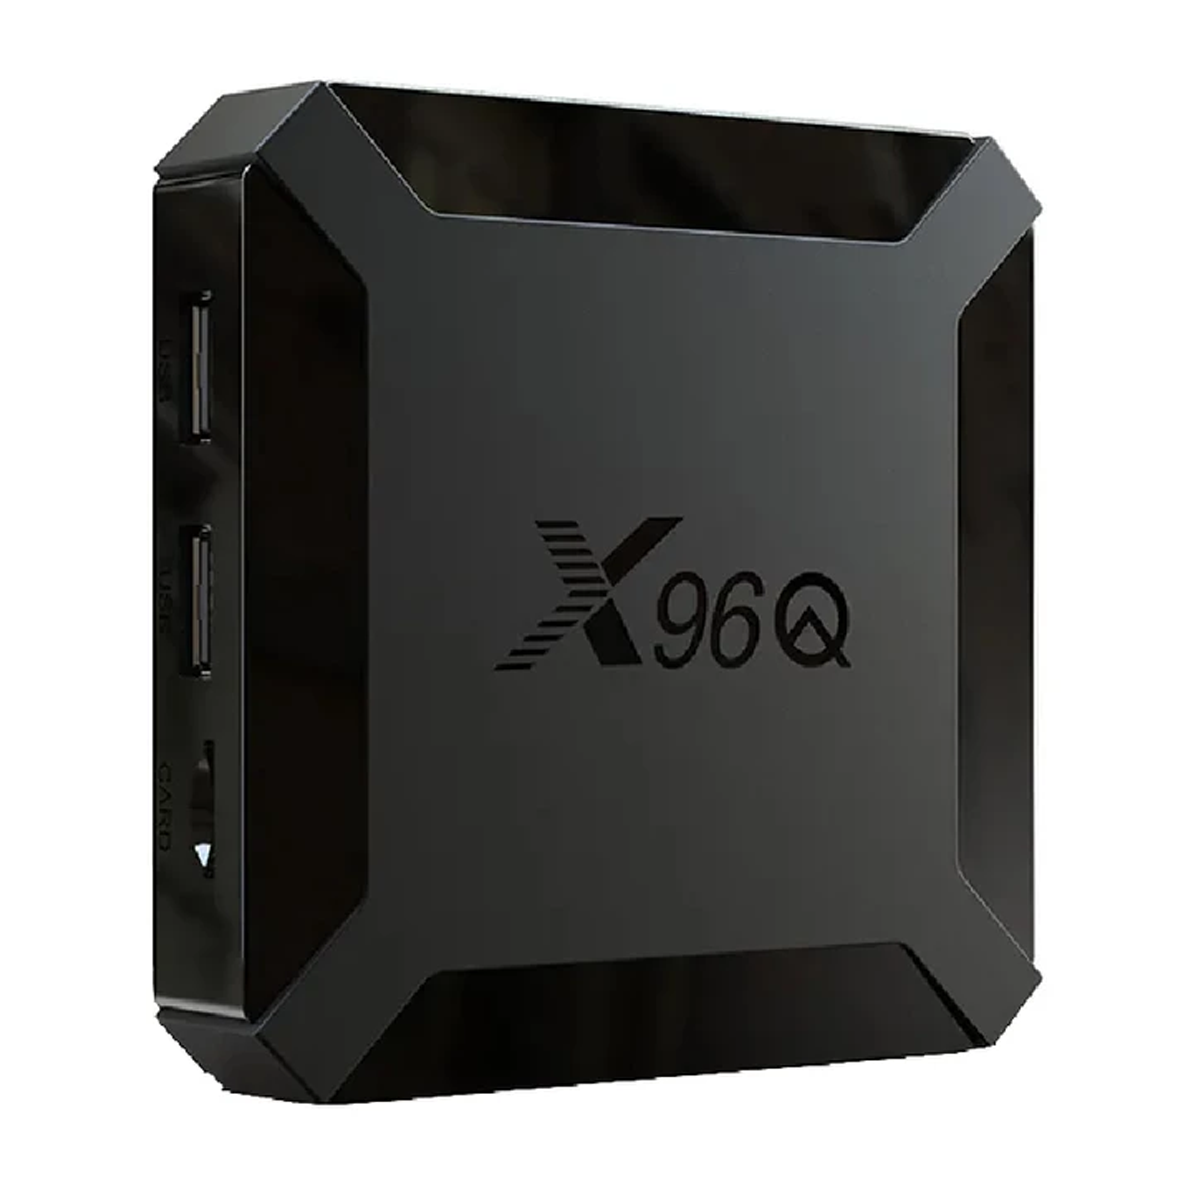 اندروید باکس ايكس96 مدل X96Q 